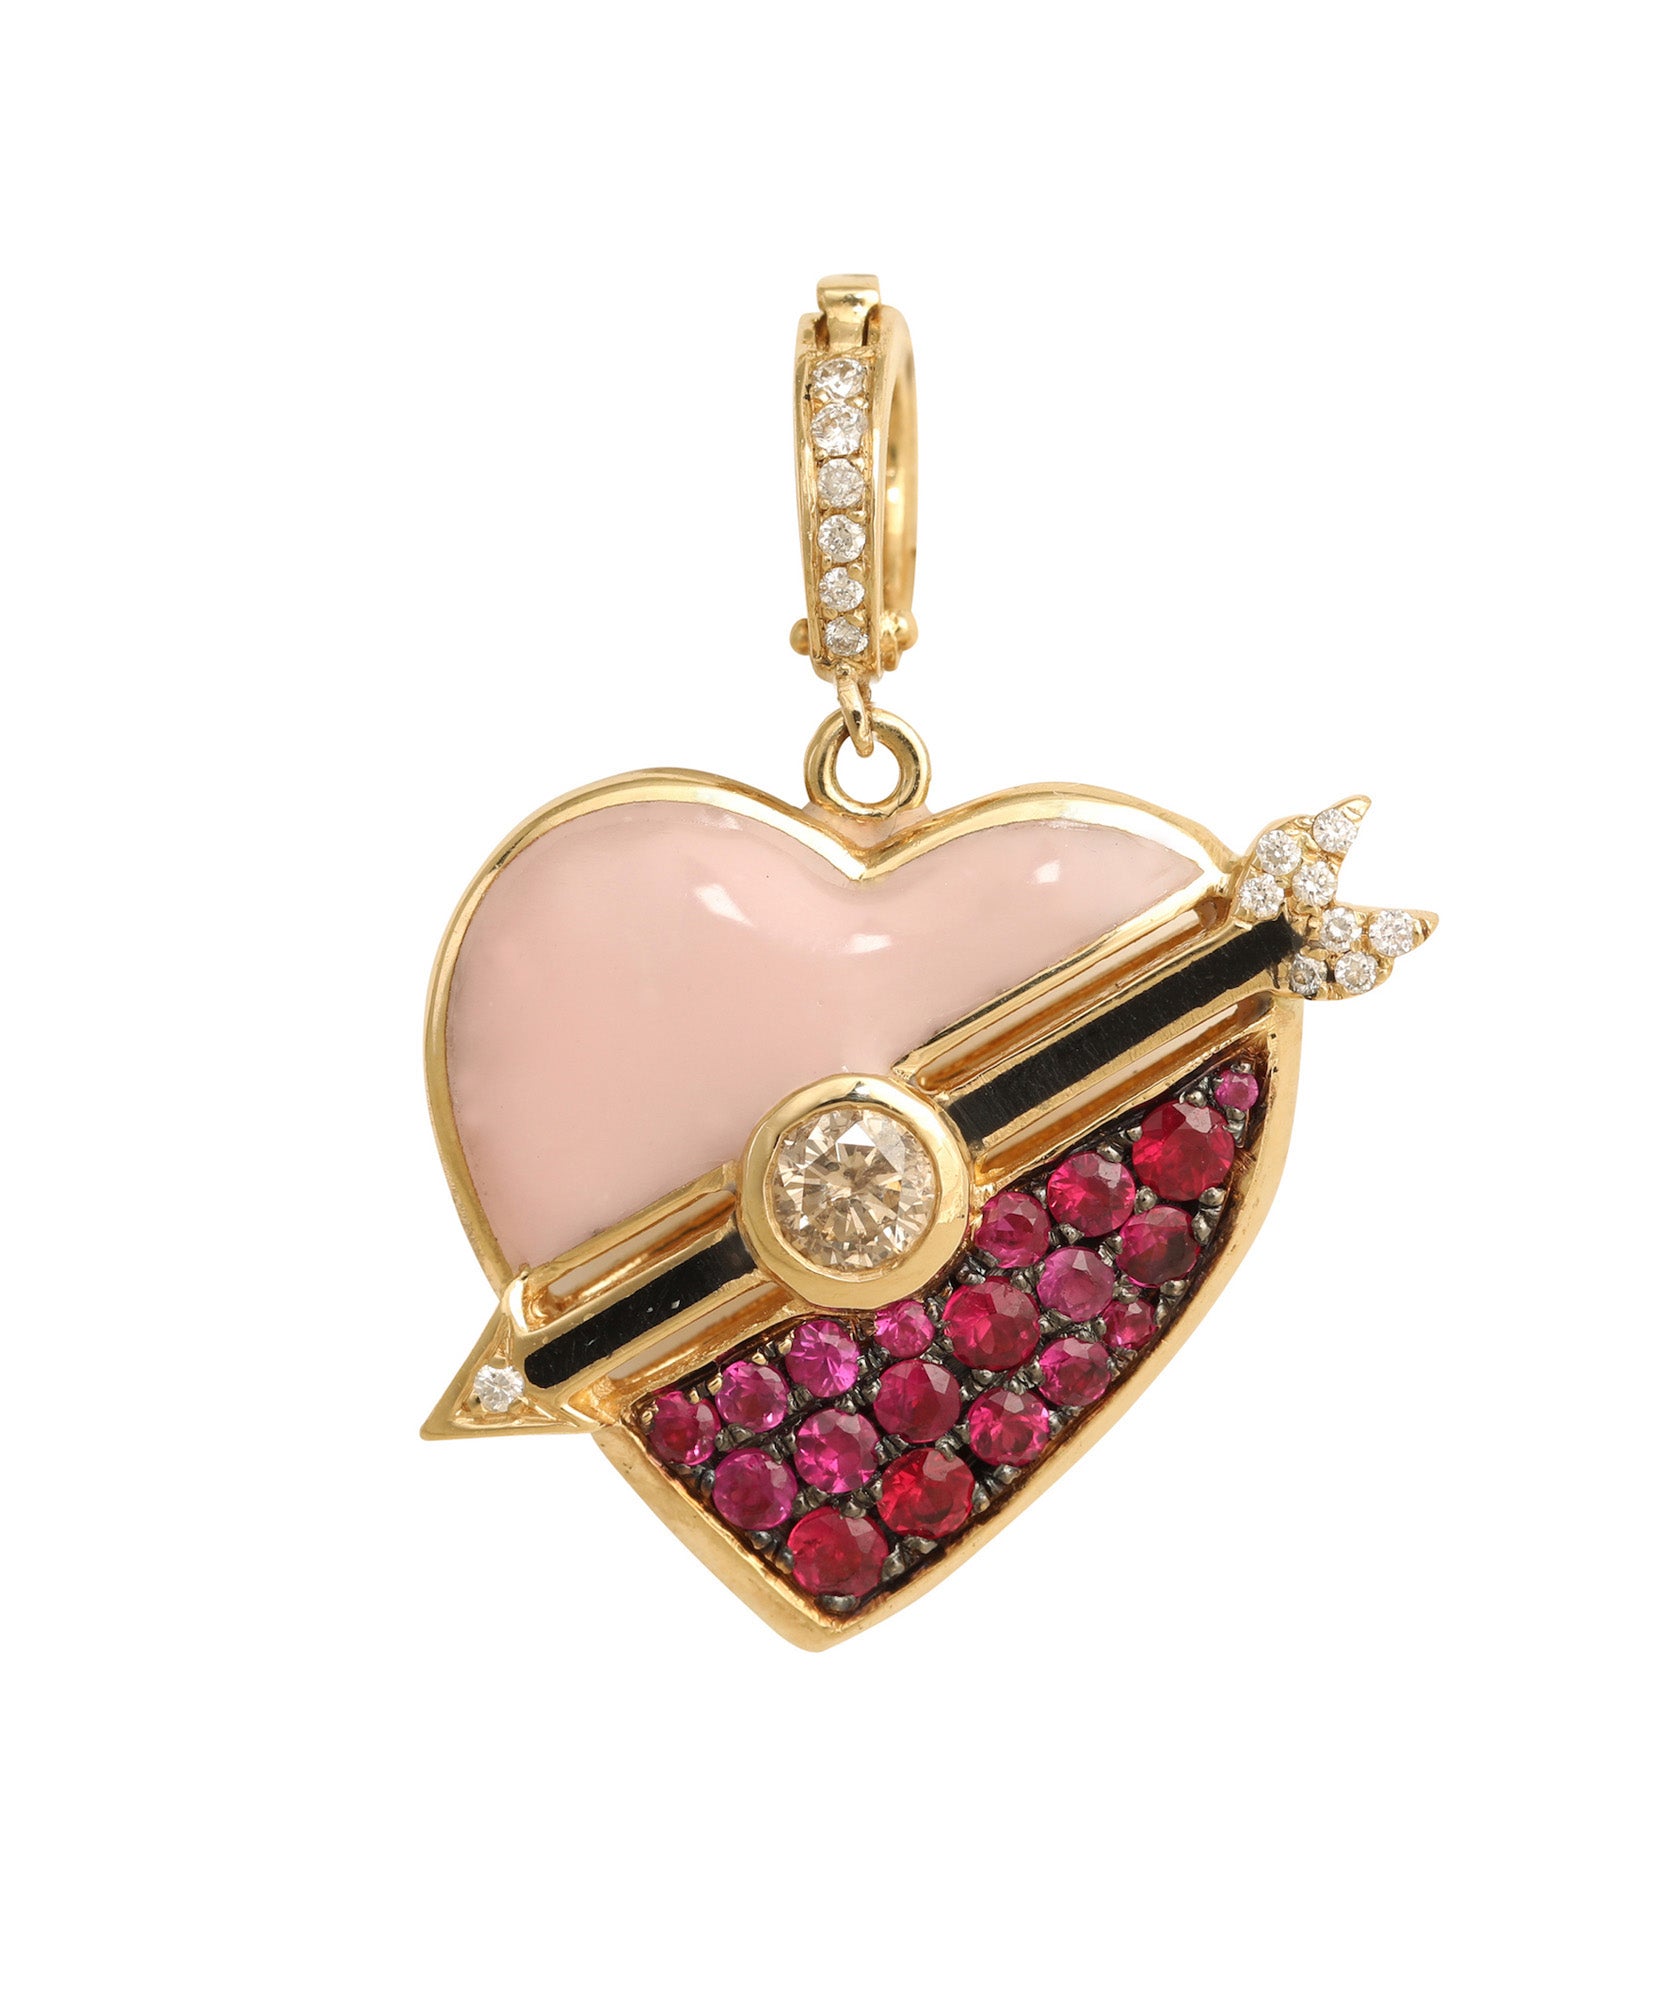 J by boghossian, gold, charm, heart, pink enamel, ruby, brown diamond